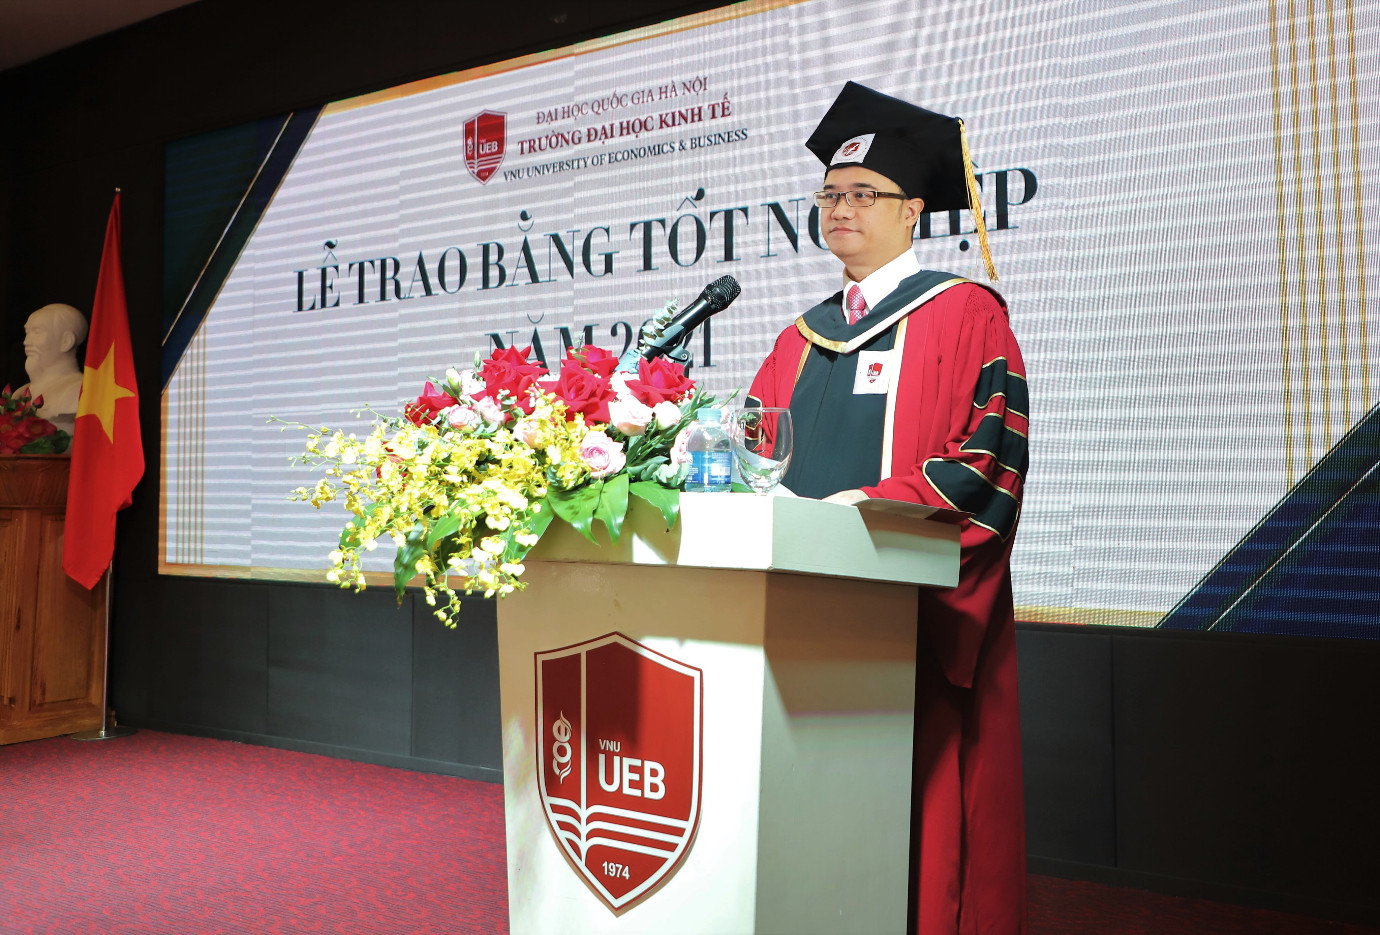 Trường ĐH Kinh tế – ĐHQG Hà Nội lần đầu trao bằng tốt nghiệp trực tuyến